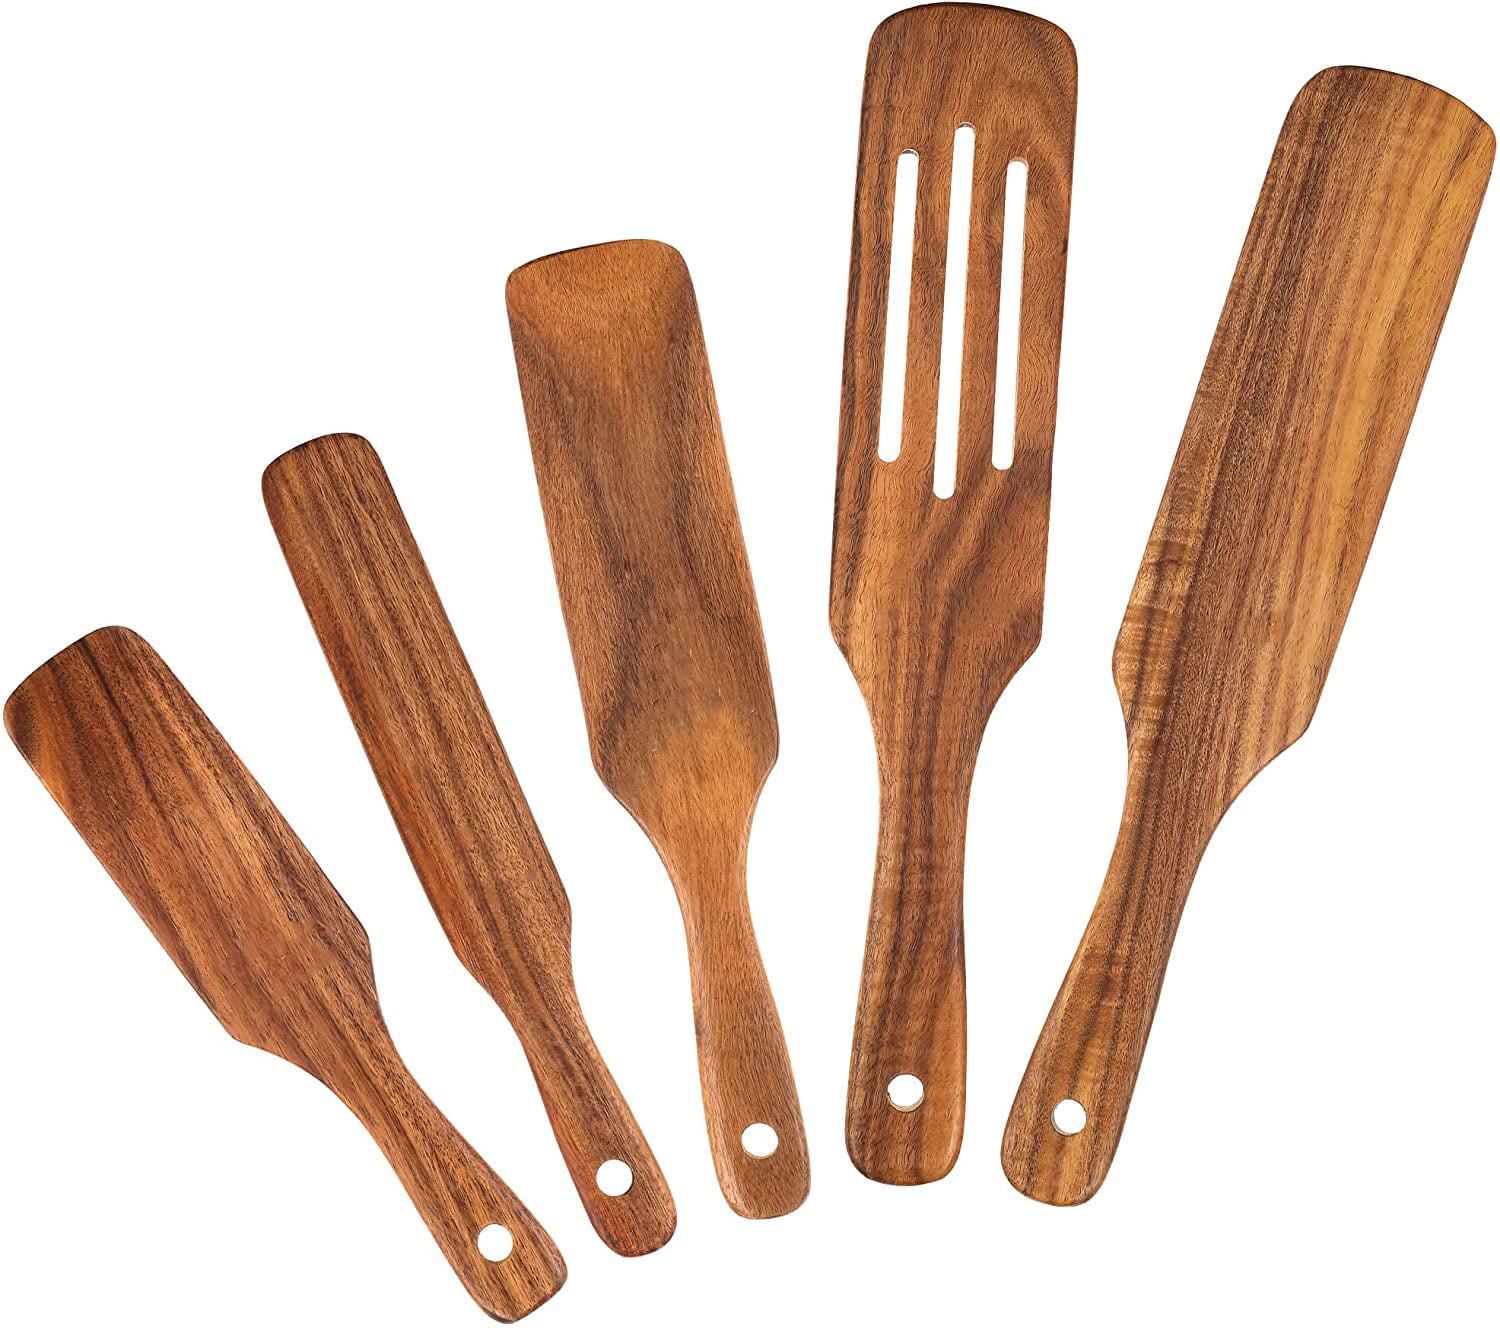 Wooden Spurtle Set,100% Natural Teak Spurtles Kitchen Tools 5Pcs Wooden Spatula Wooden Utensils for Cooking Wooden Kitchen Utensil Set Wooden Cooking Utensils Wooden Spoons for Cooking 